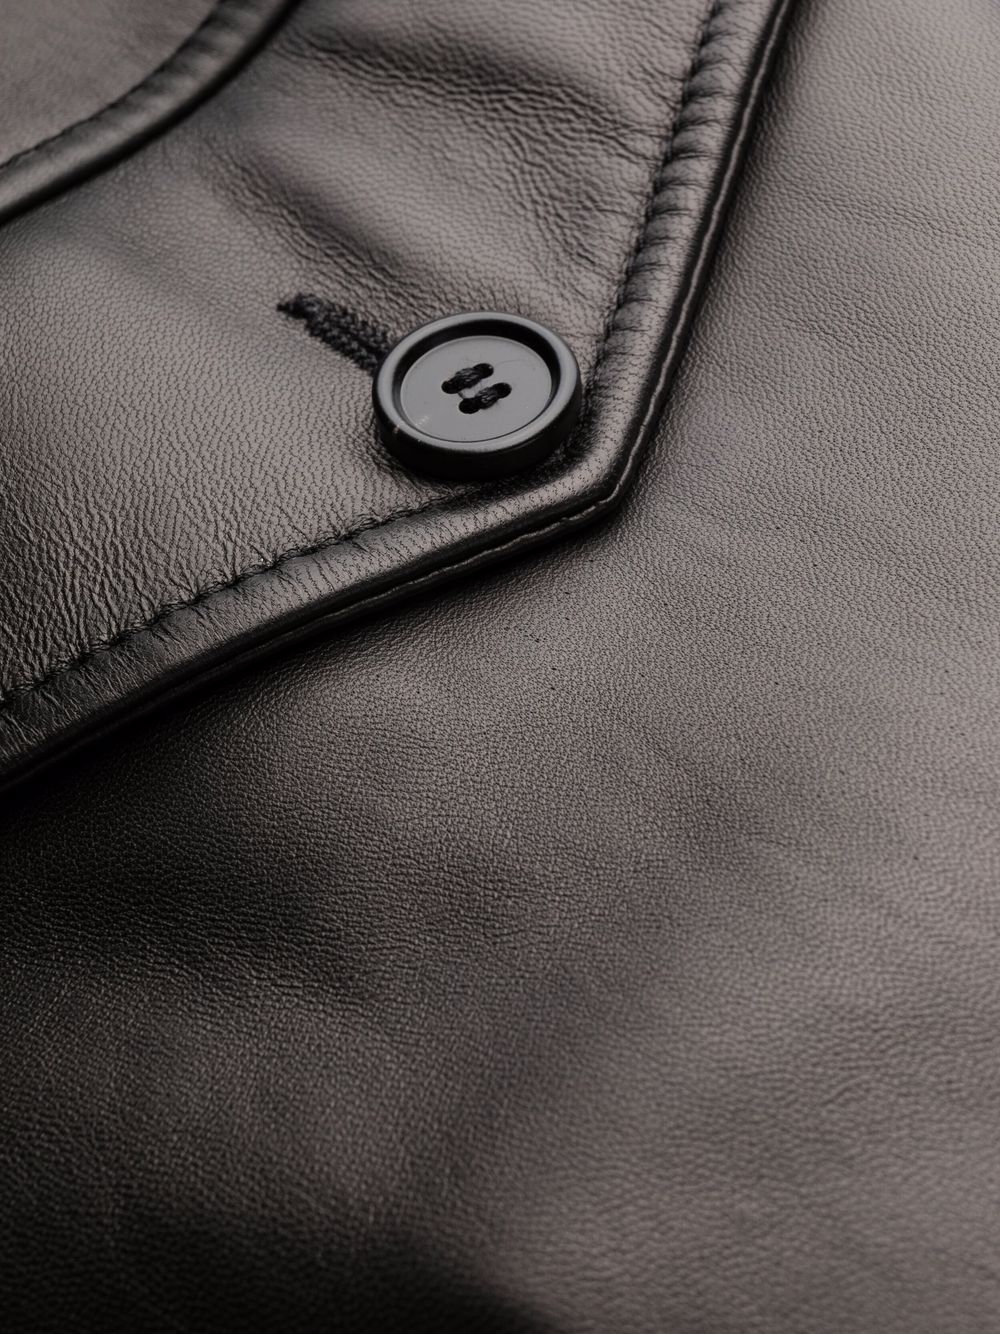 Marni Faux fur-trim Leather Jacket - Farfetch